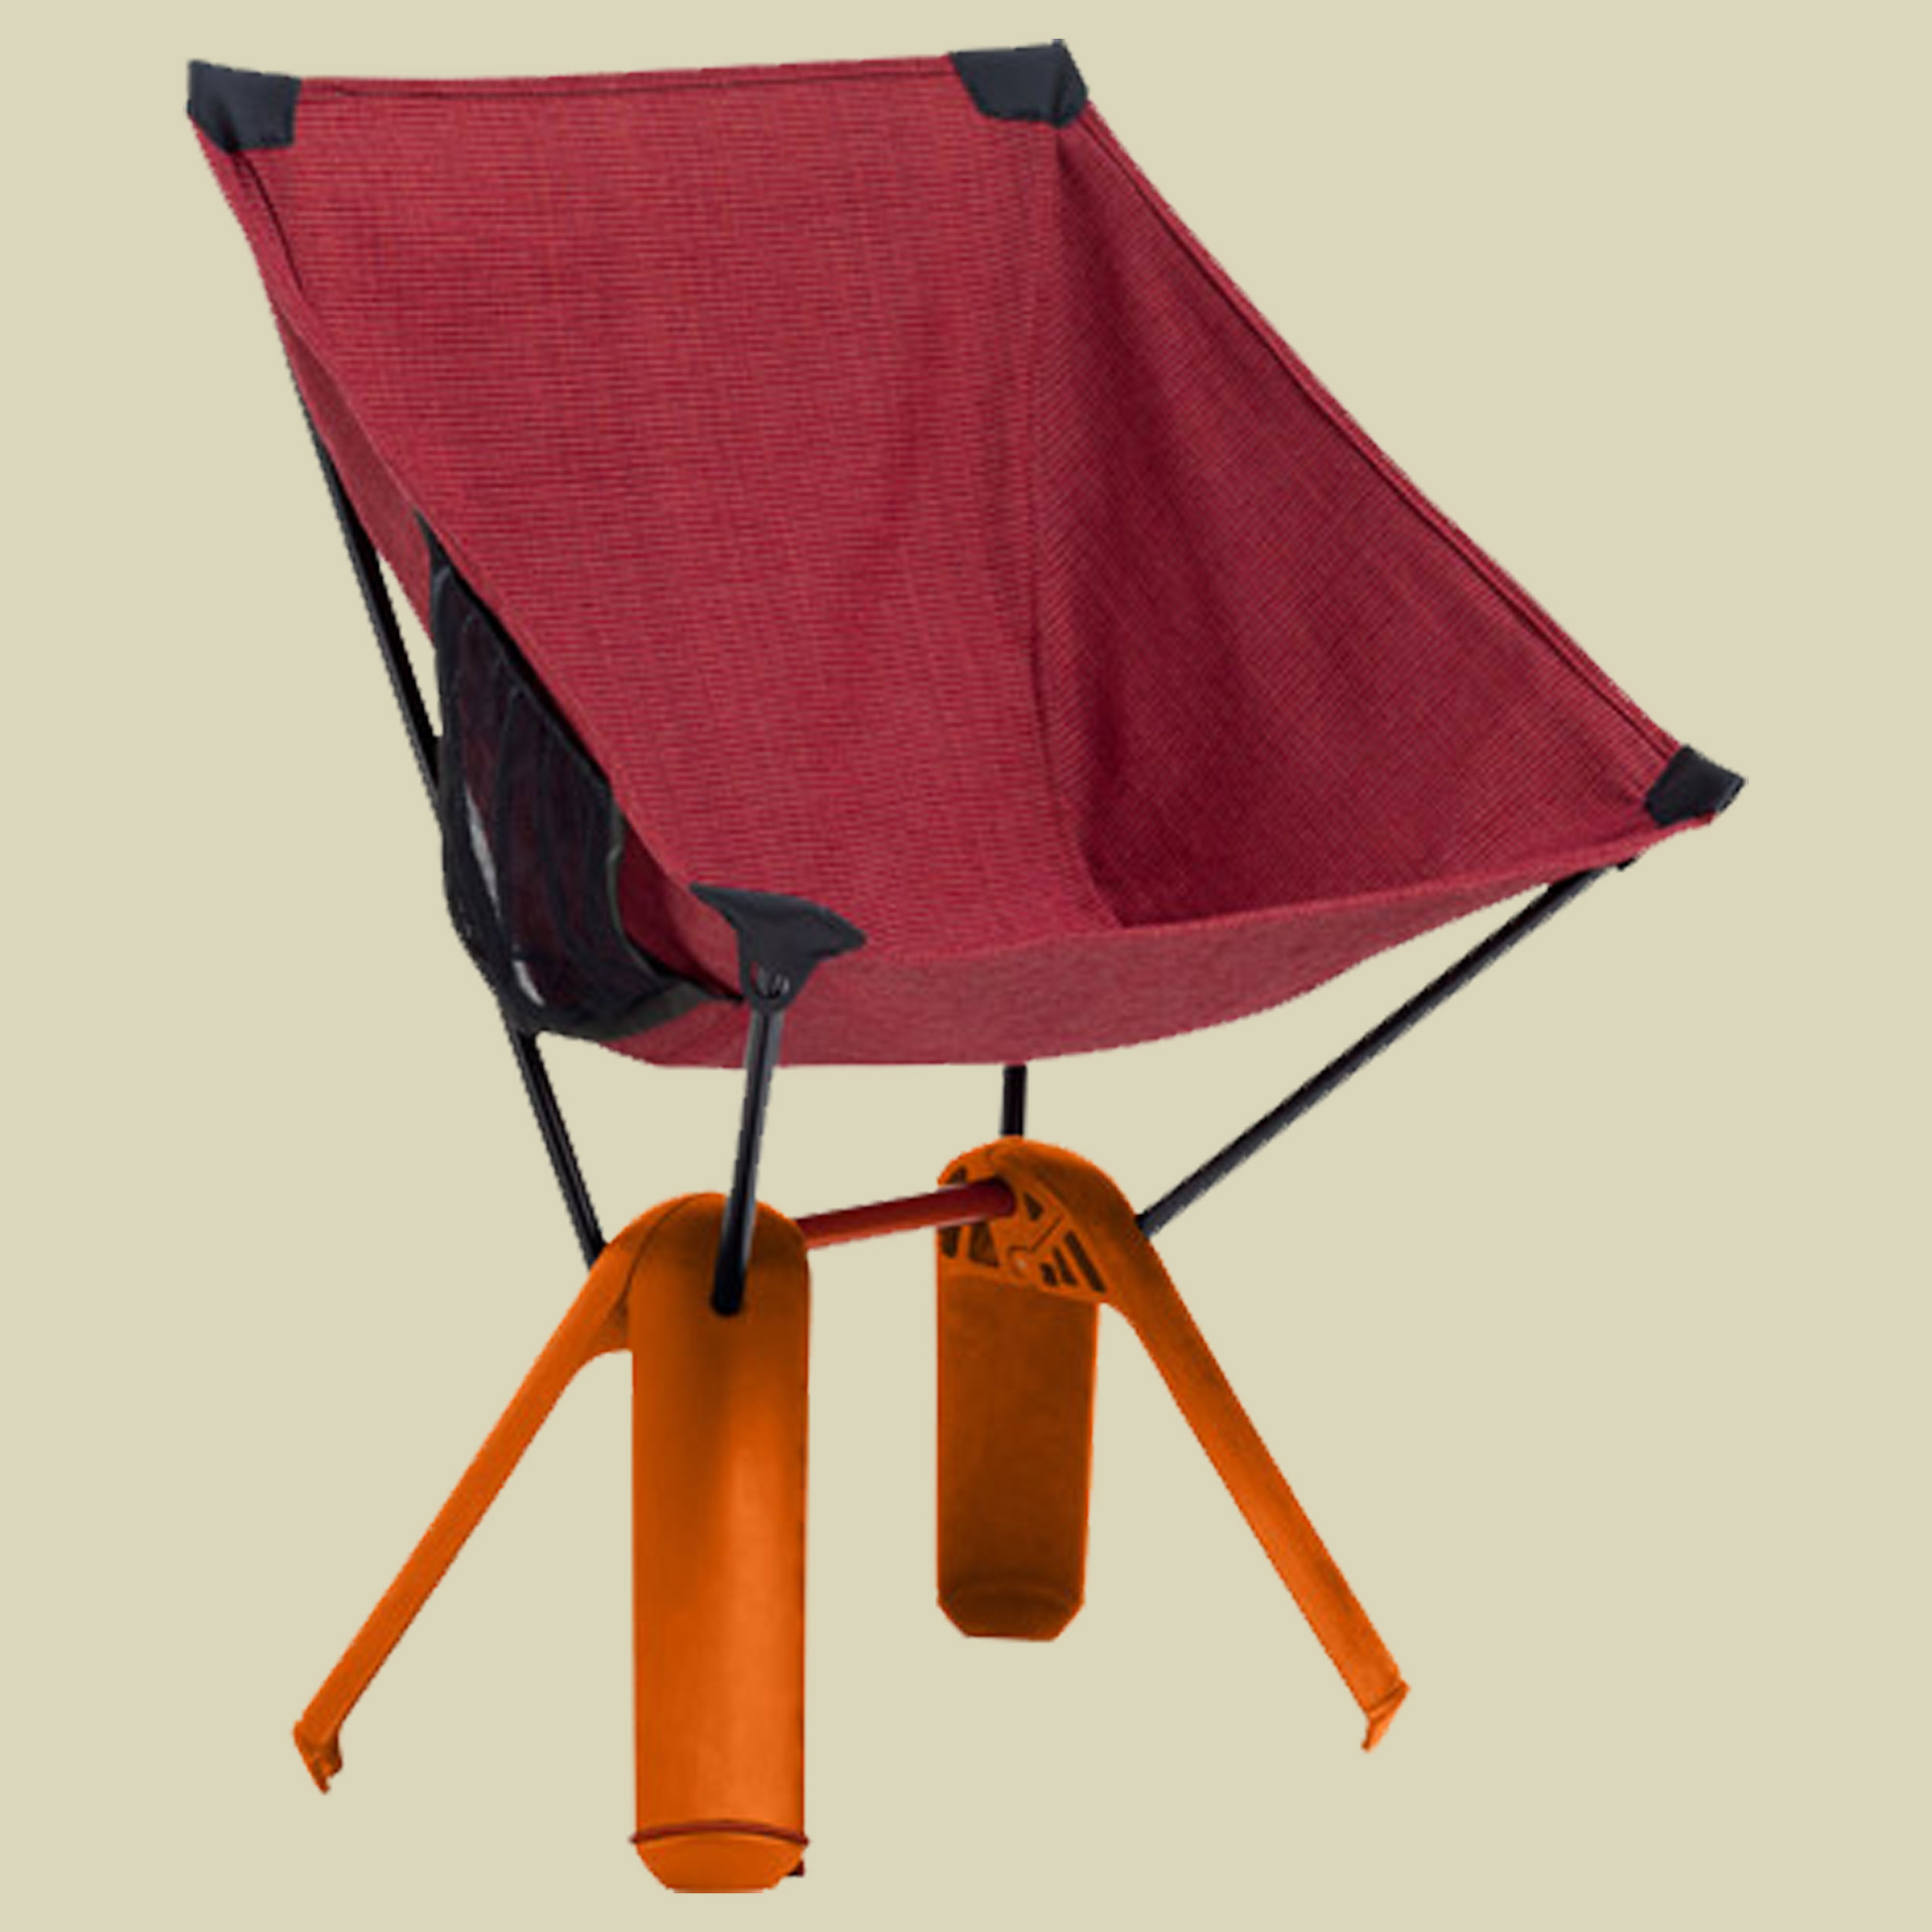 Quadra Chair Größe one size Farbe red ochre